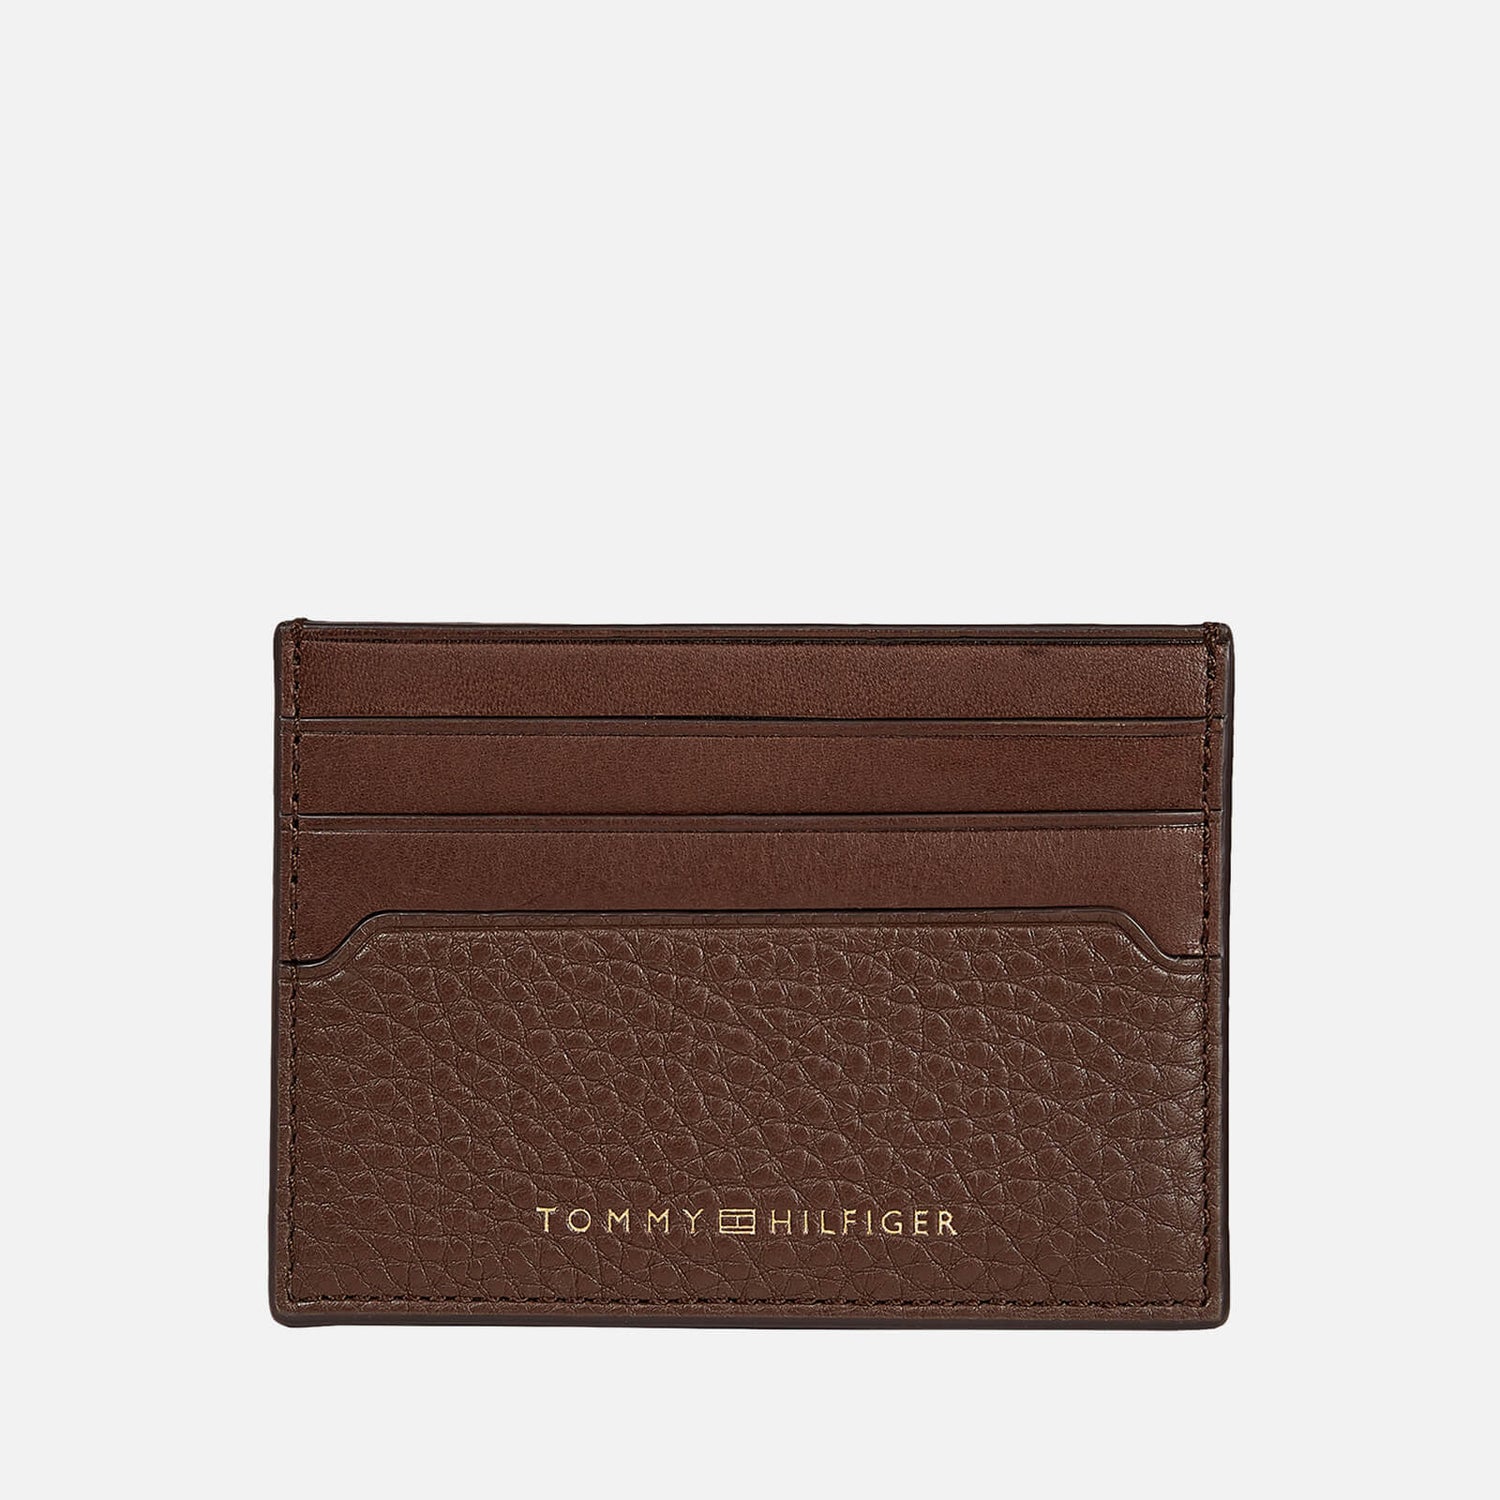 Tommy Hilfiger Leather Cardholder